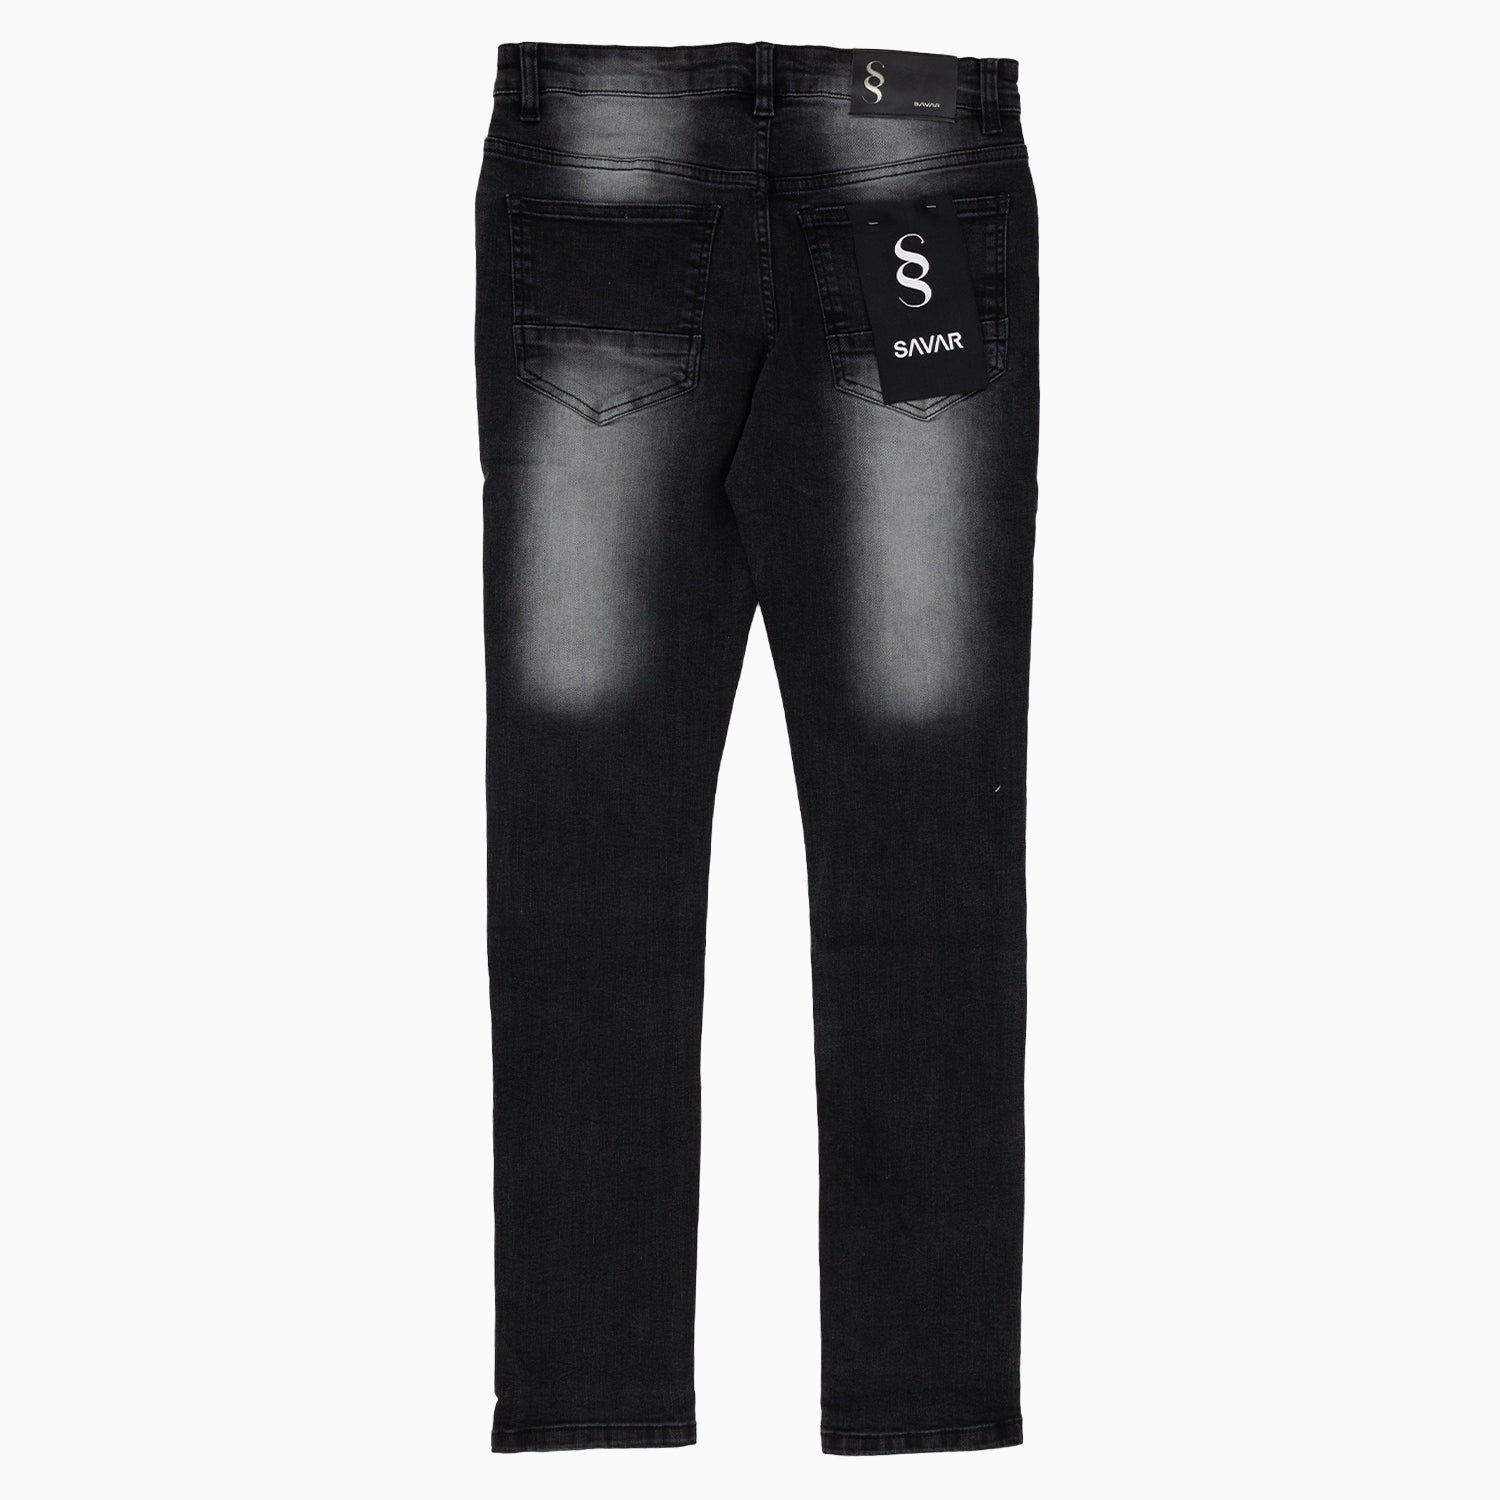 Men's Savar Black Wash Slim Denim Jeans Pant